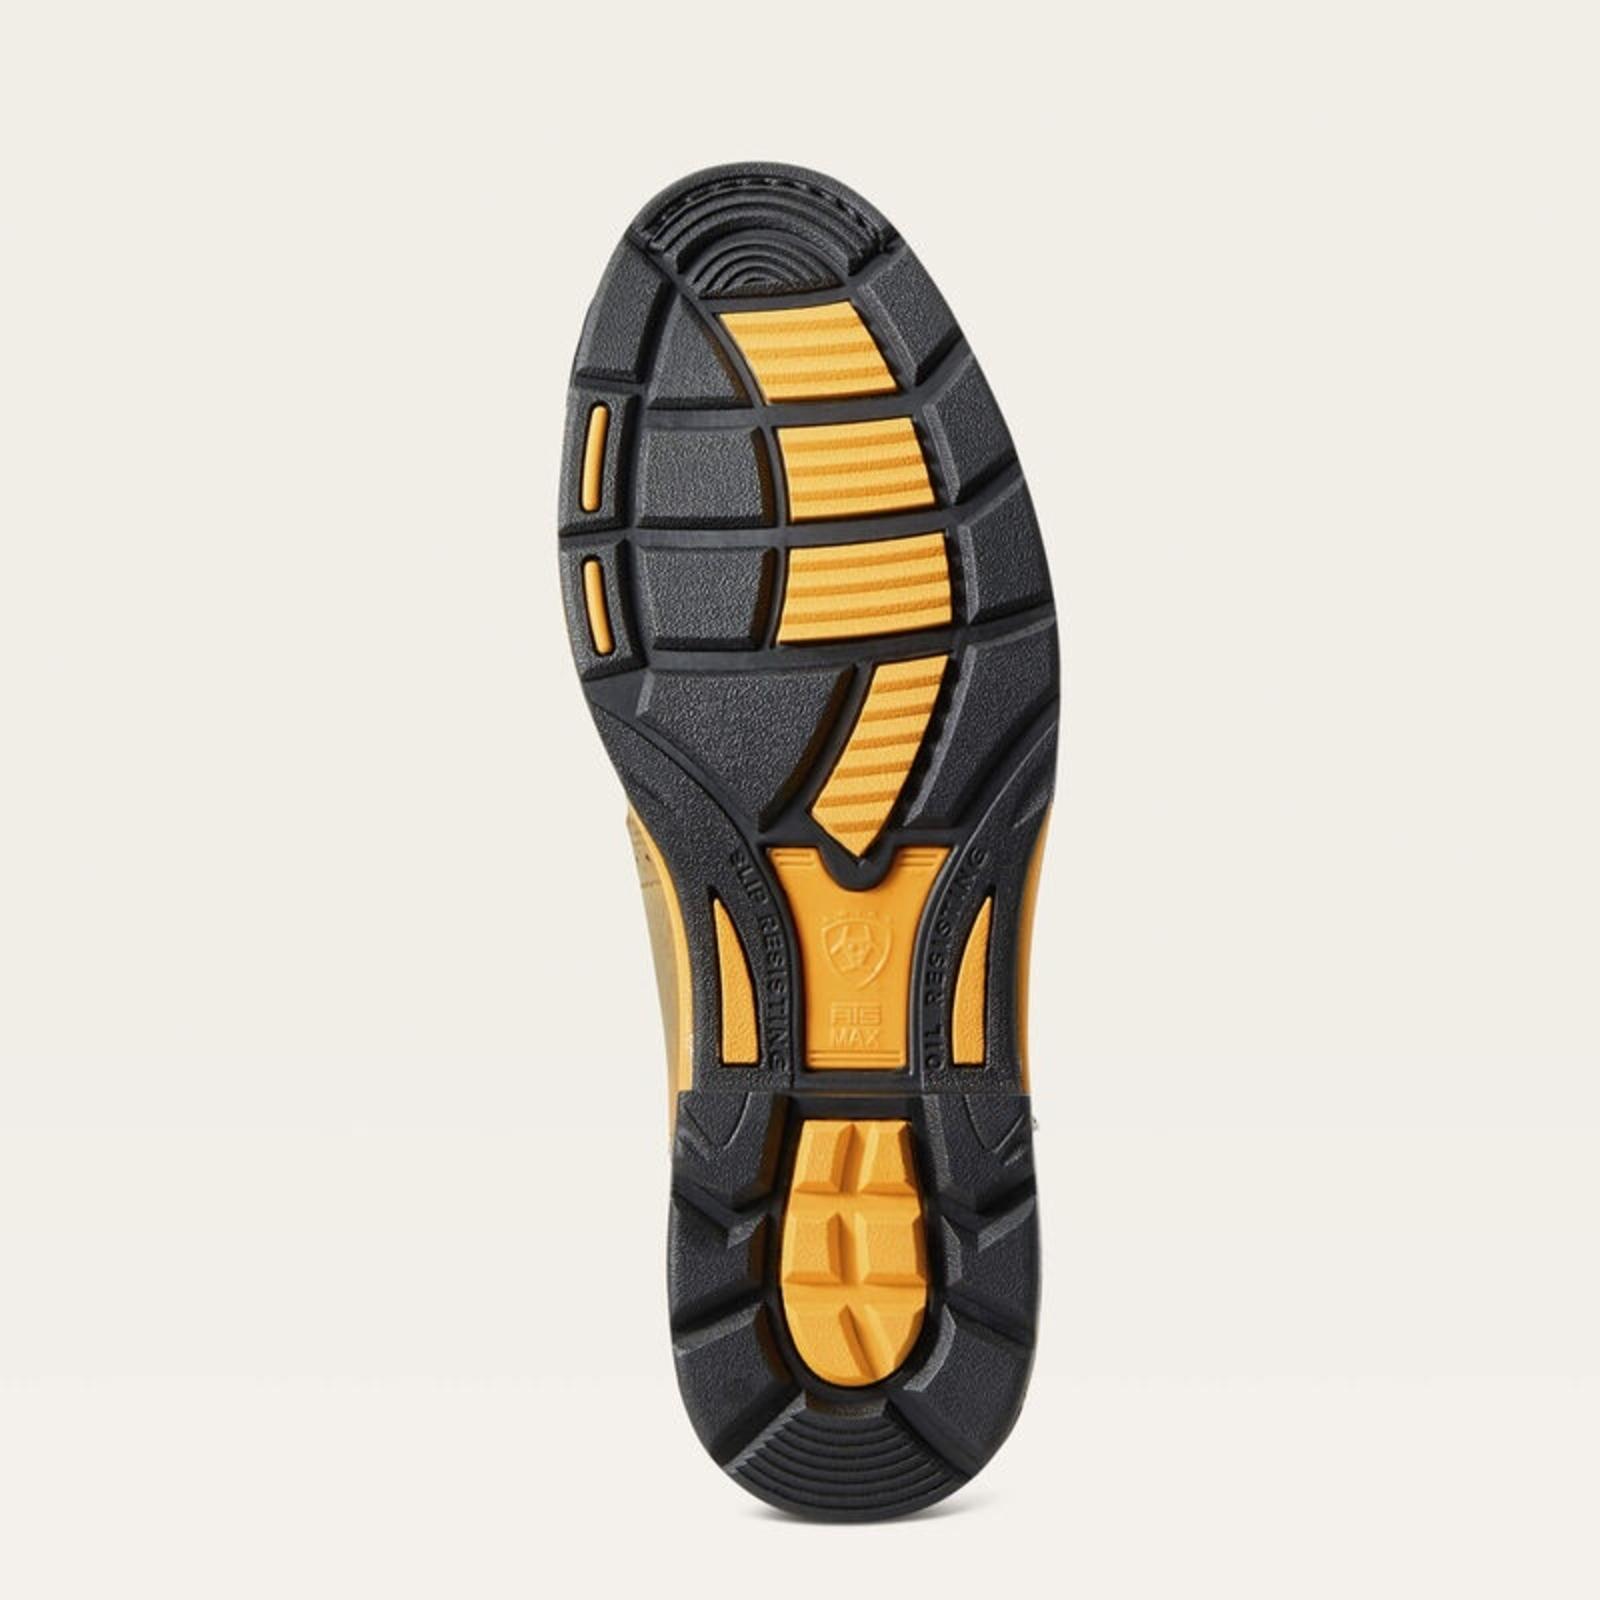 Ariat Men's WorkHog Waterproof Composite Toe Work Boot